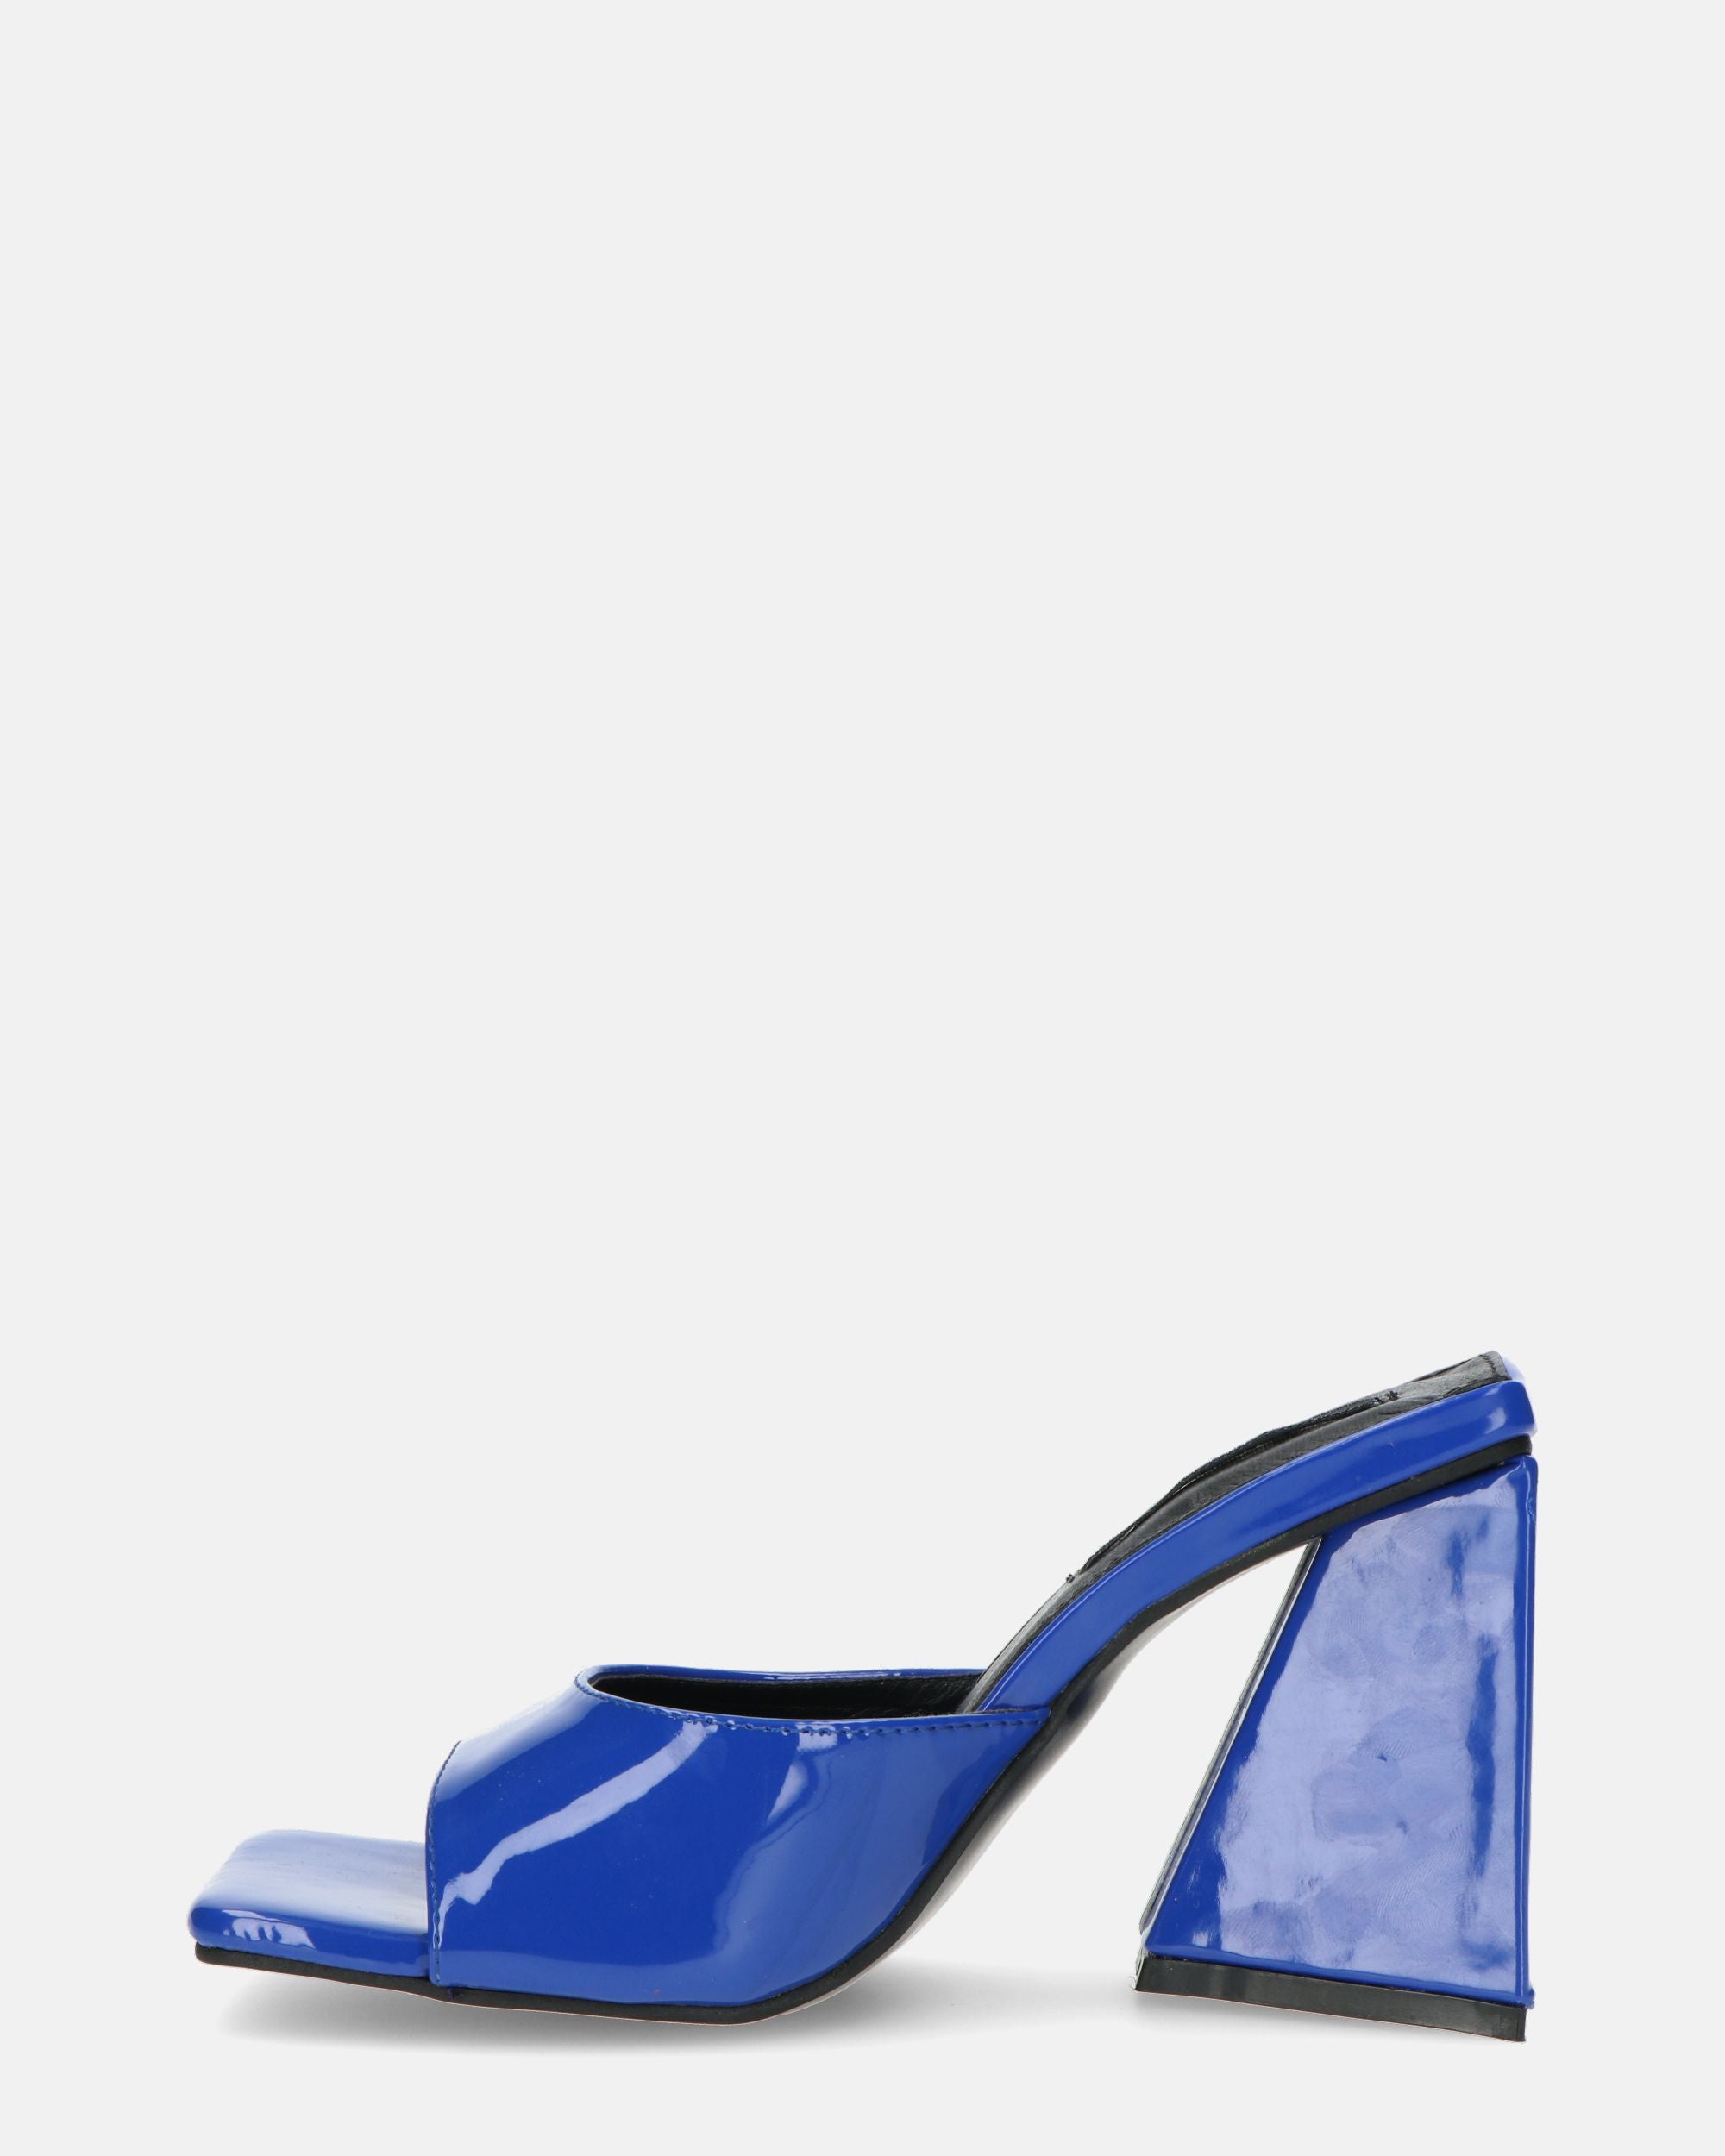 MILEY - sandales en glassy bleu à talon carré